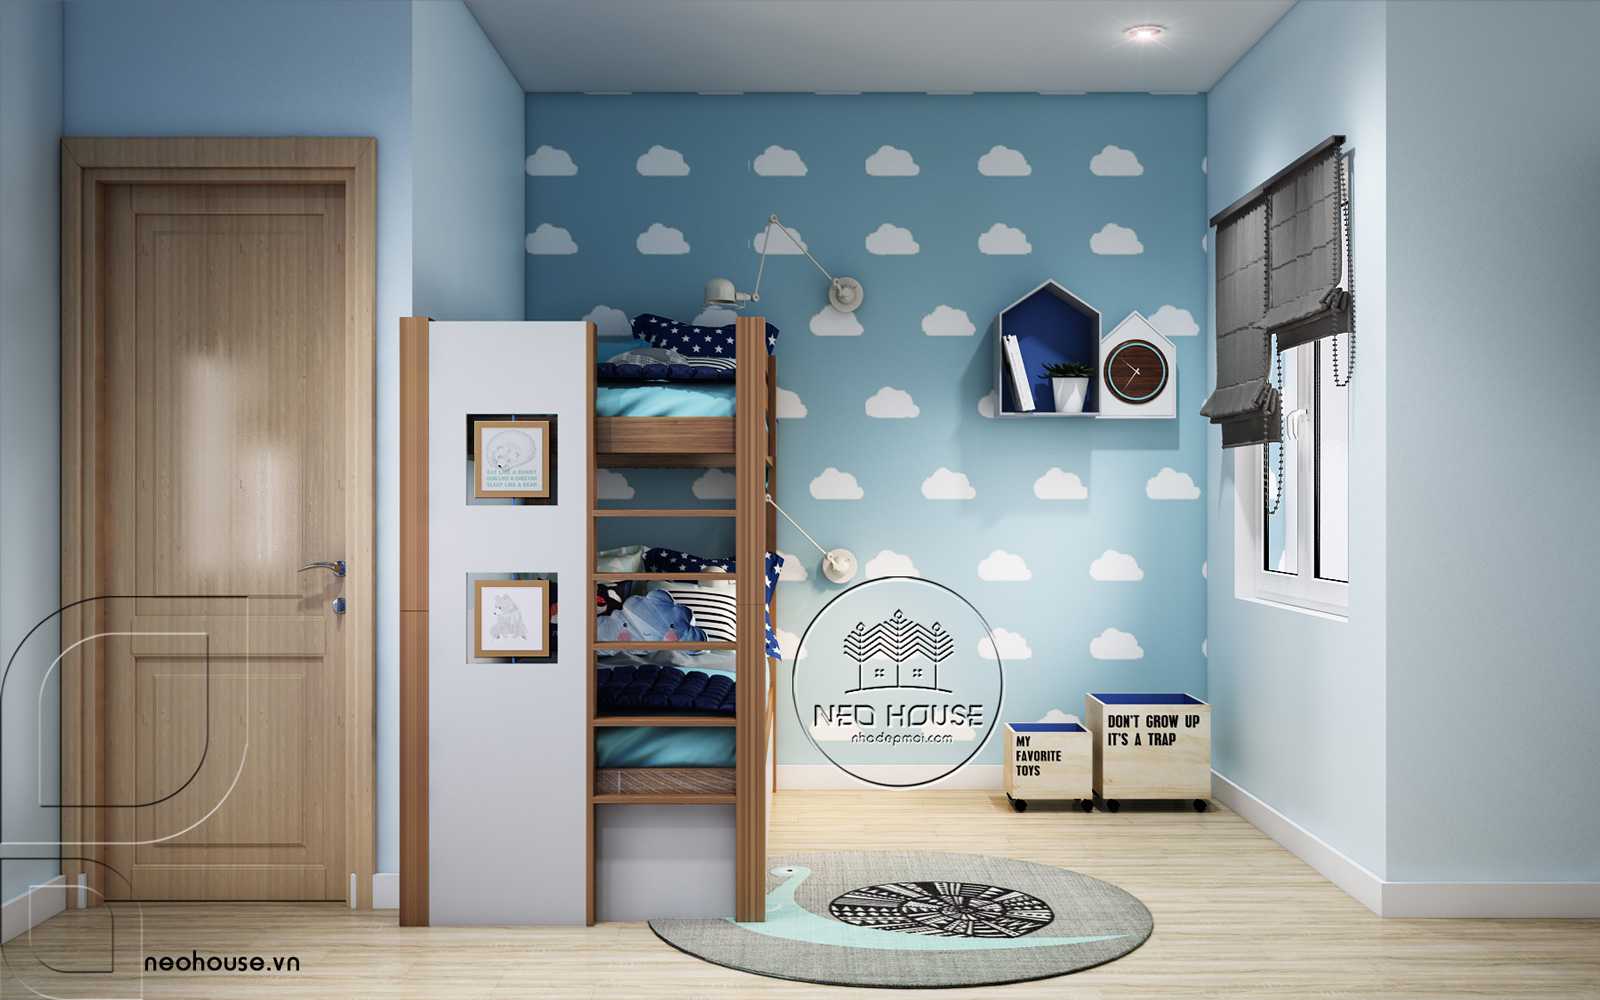 Thiết kế nội thất phòng ngủ cho các con nhỏ nhà phố 3 tầng 1 tum hiện đại. Ảnh 2